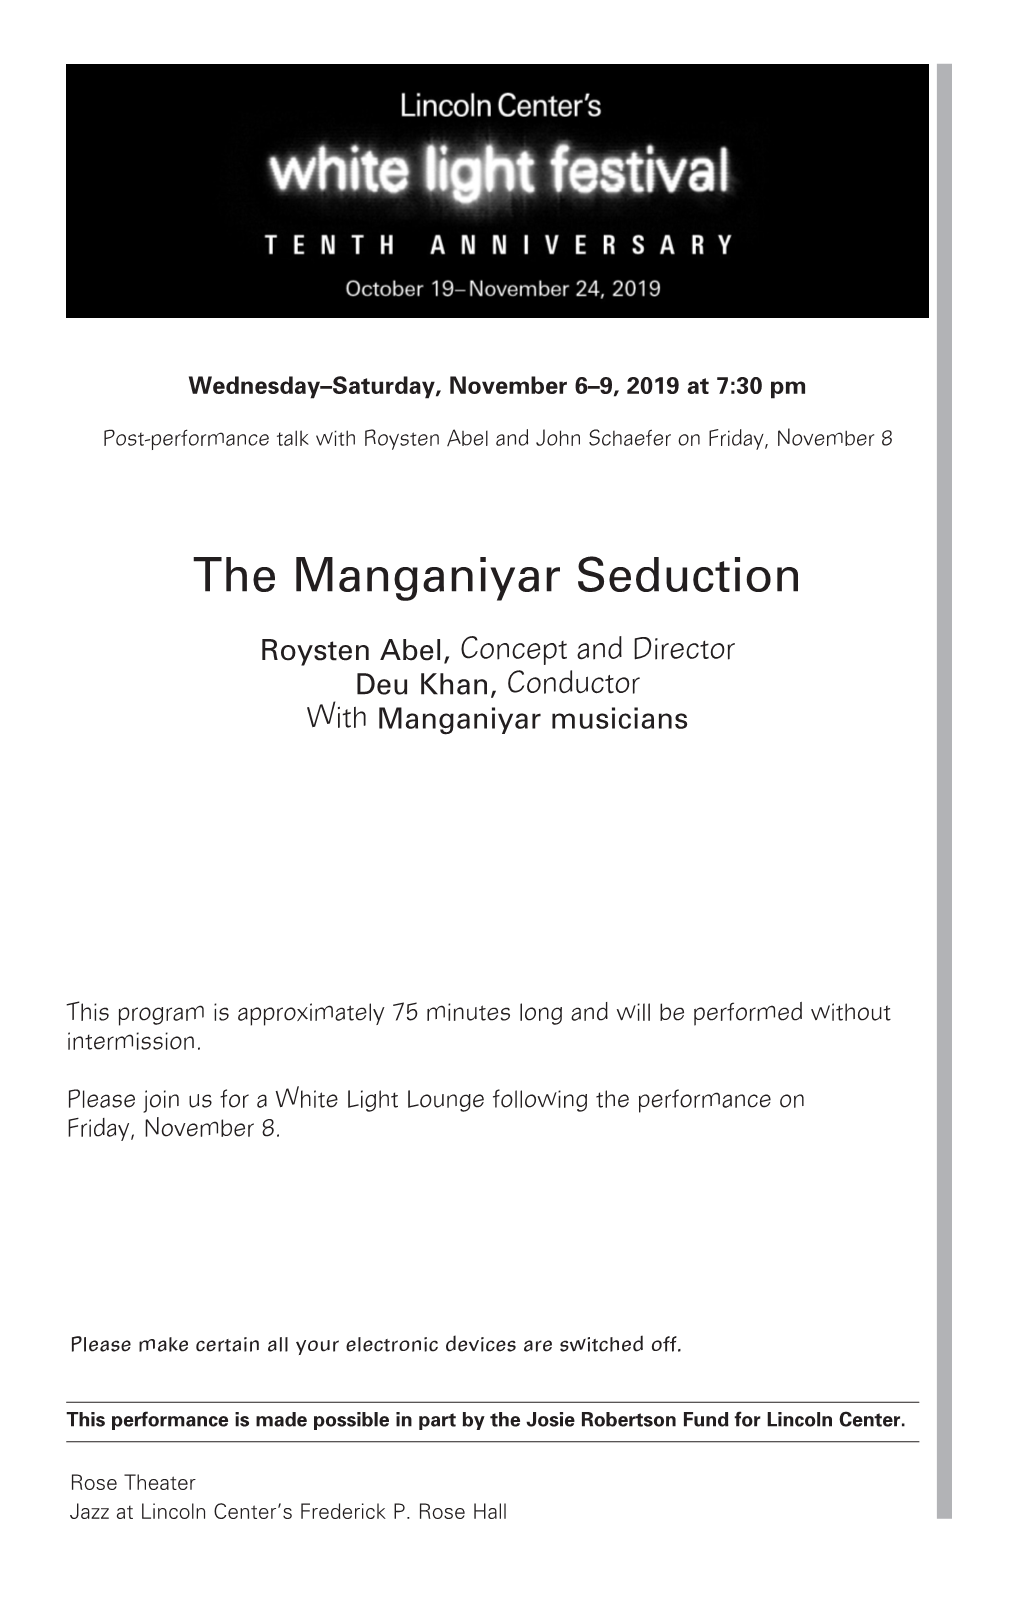 The Manganiyar Seduction